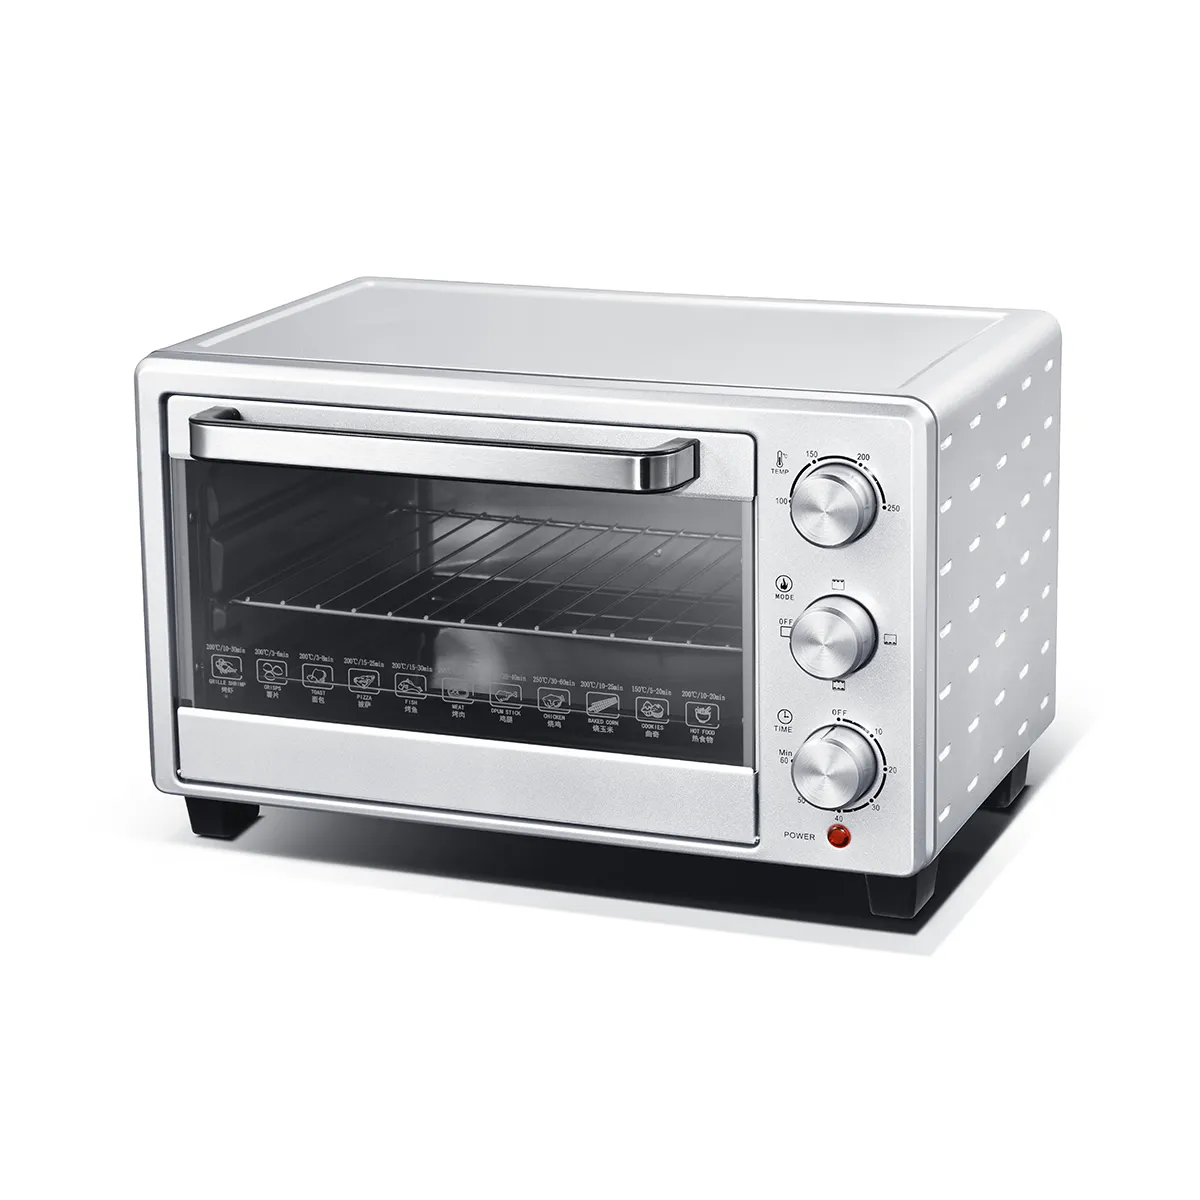 휴대용 전기 굽기 피자 토스터 오븐, 스테인리스 21L 12.5 인치를 위한 전자 토스터 피자 오븐.